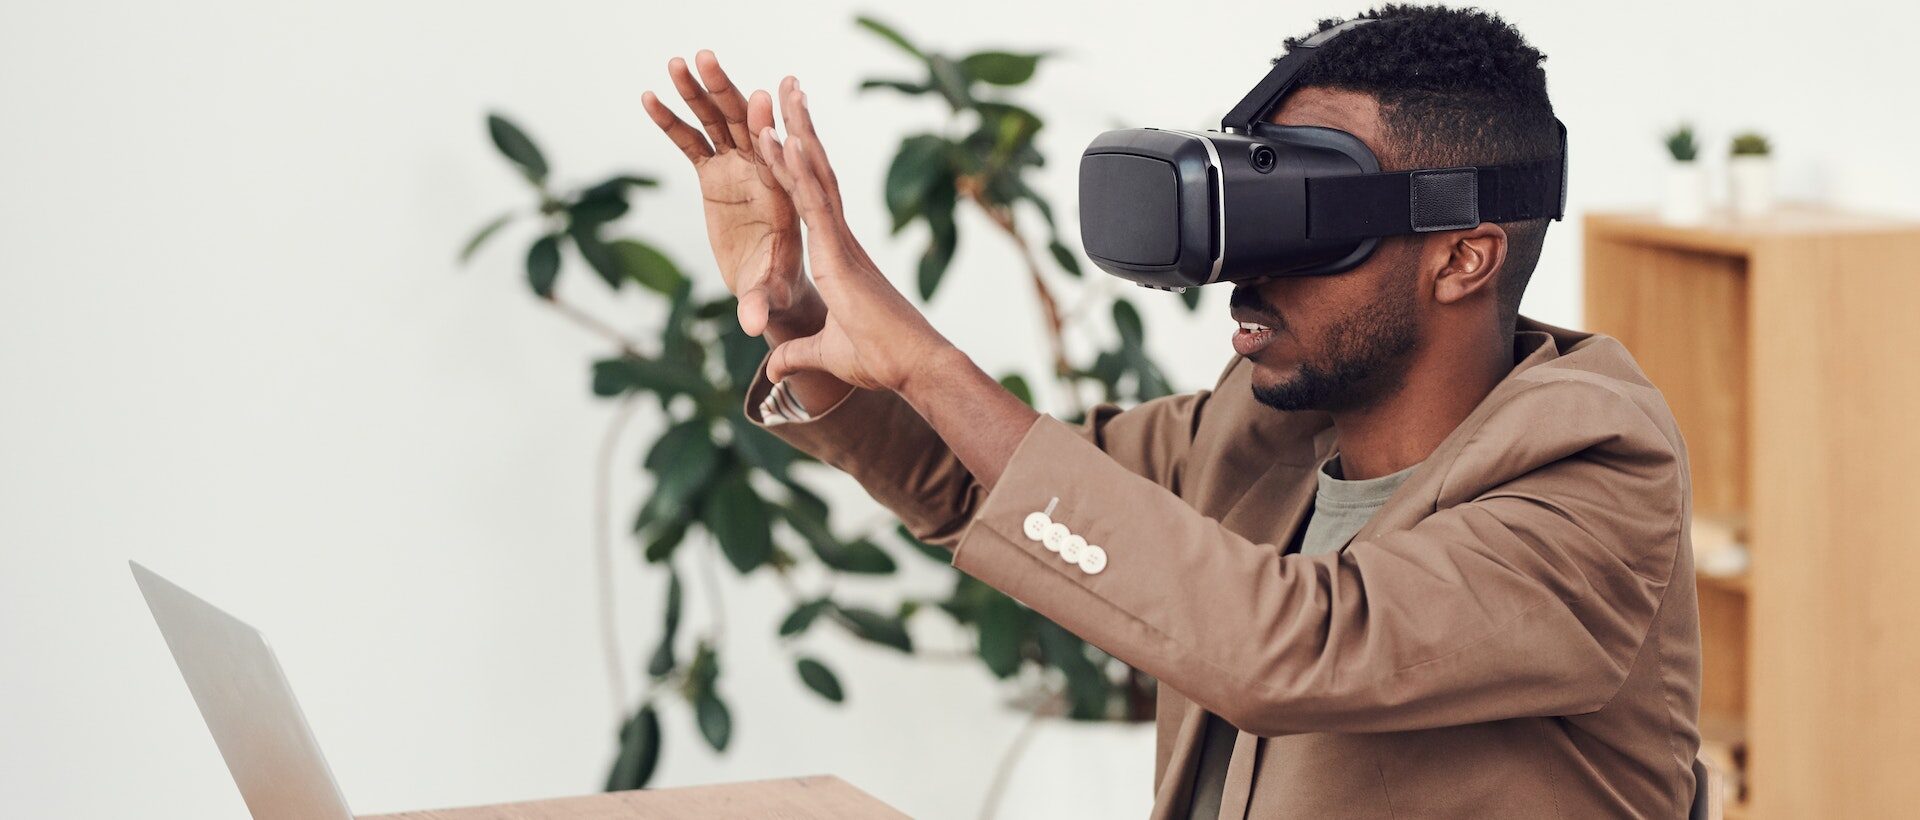 Bild von Mann der VR Brille trägt und etwas virtuell greifen will